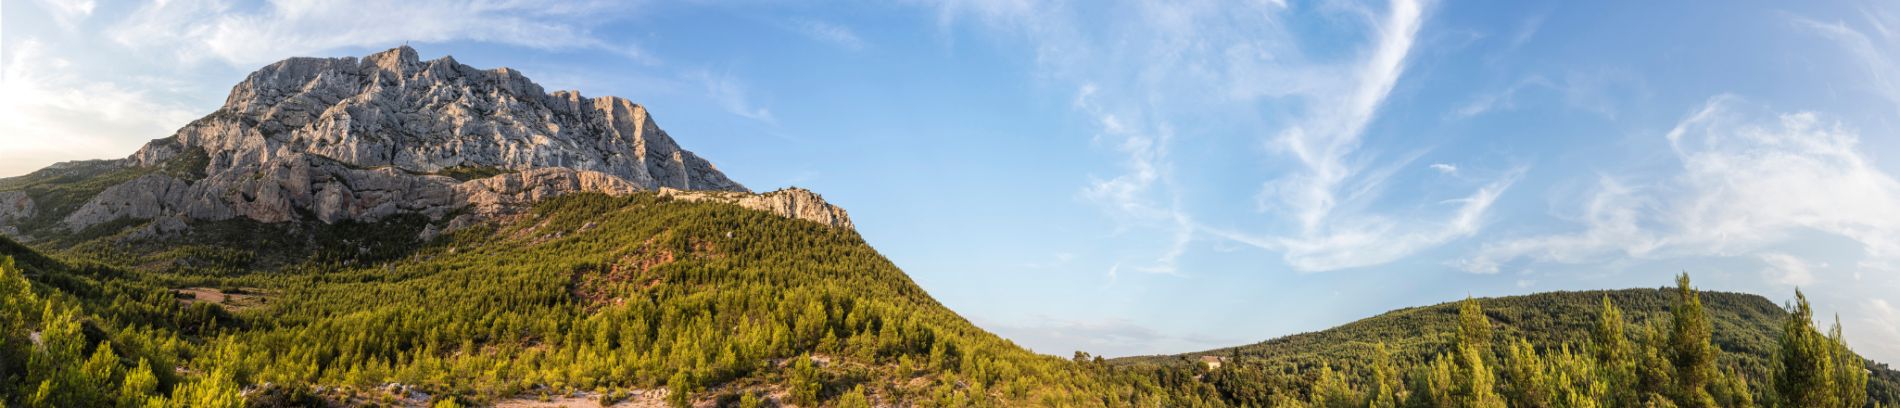 Slide La montagne de la Sainte Victoire à Aix-en-Provence